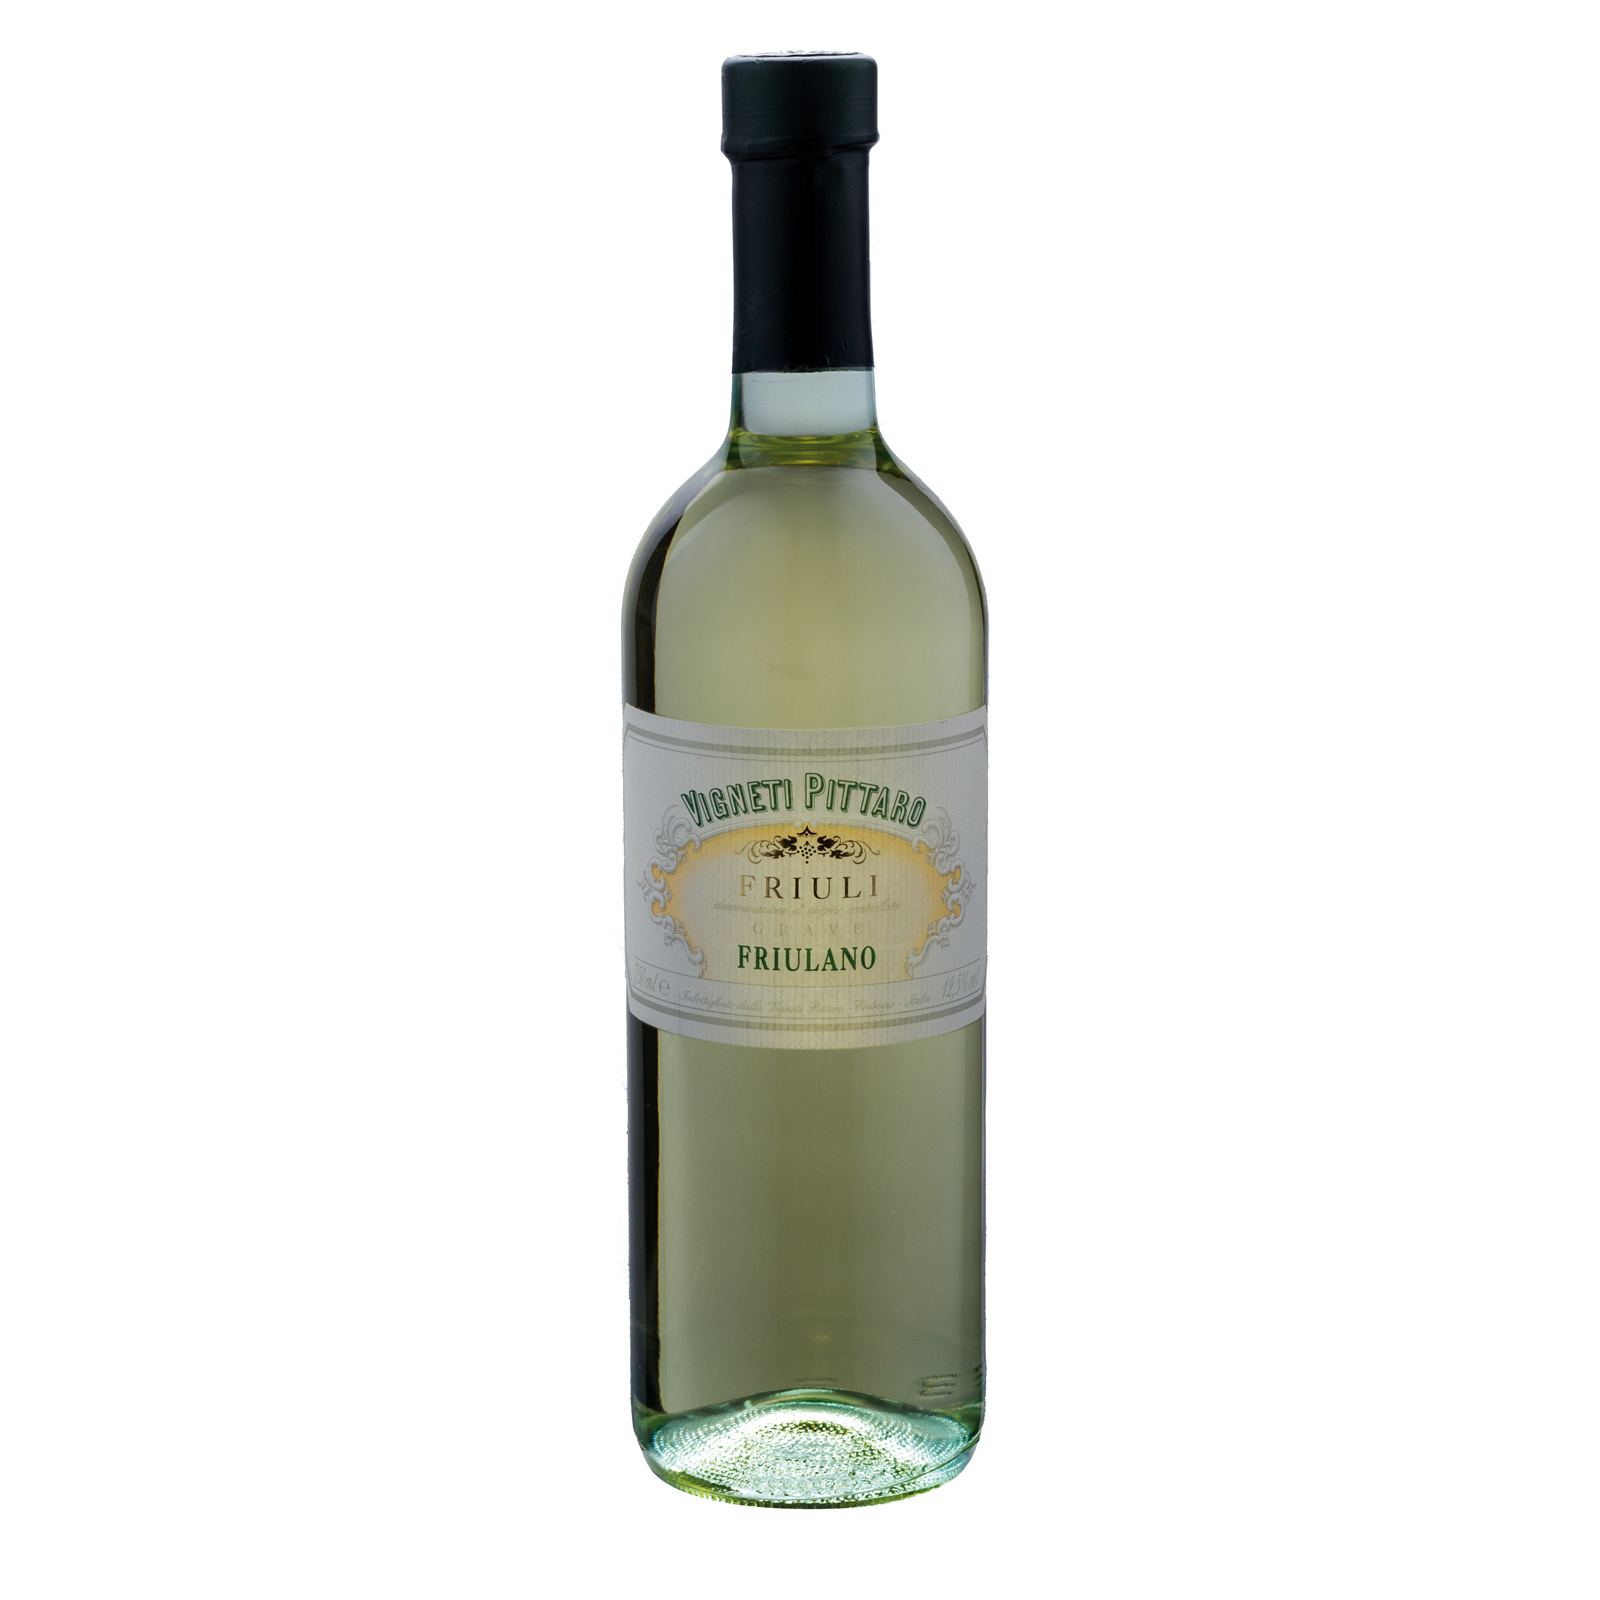 Flasche italienischer Weißwein, Friulano, Weinanbaugebiet Grave, Delizia